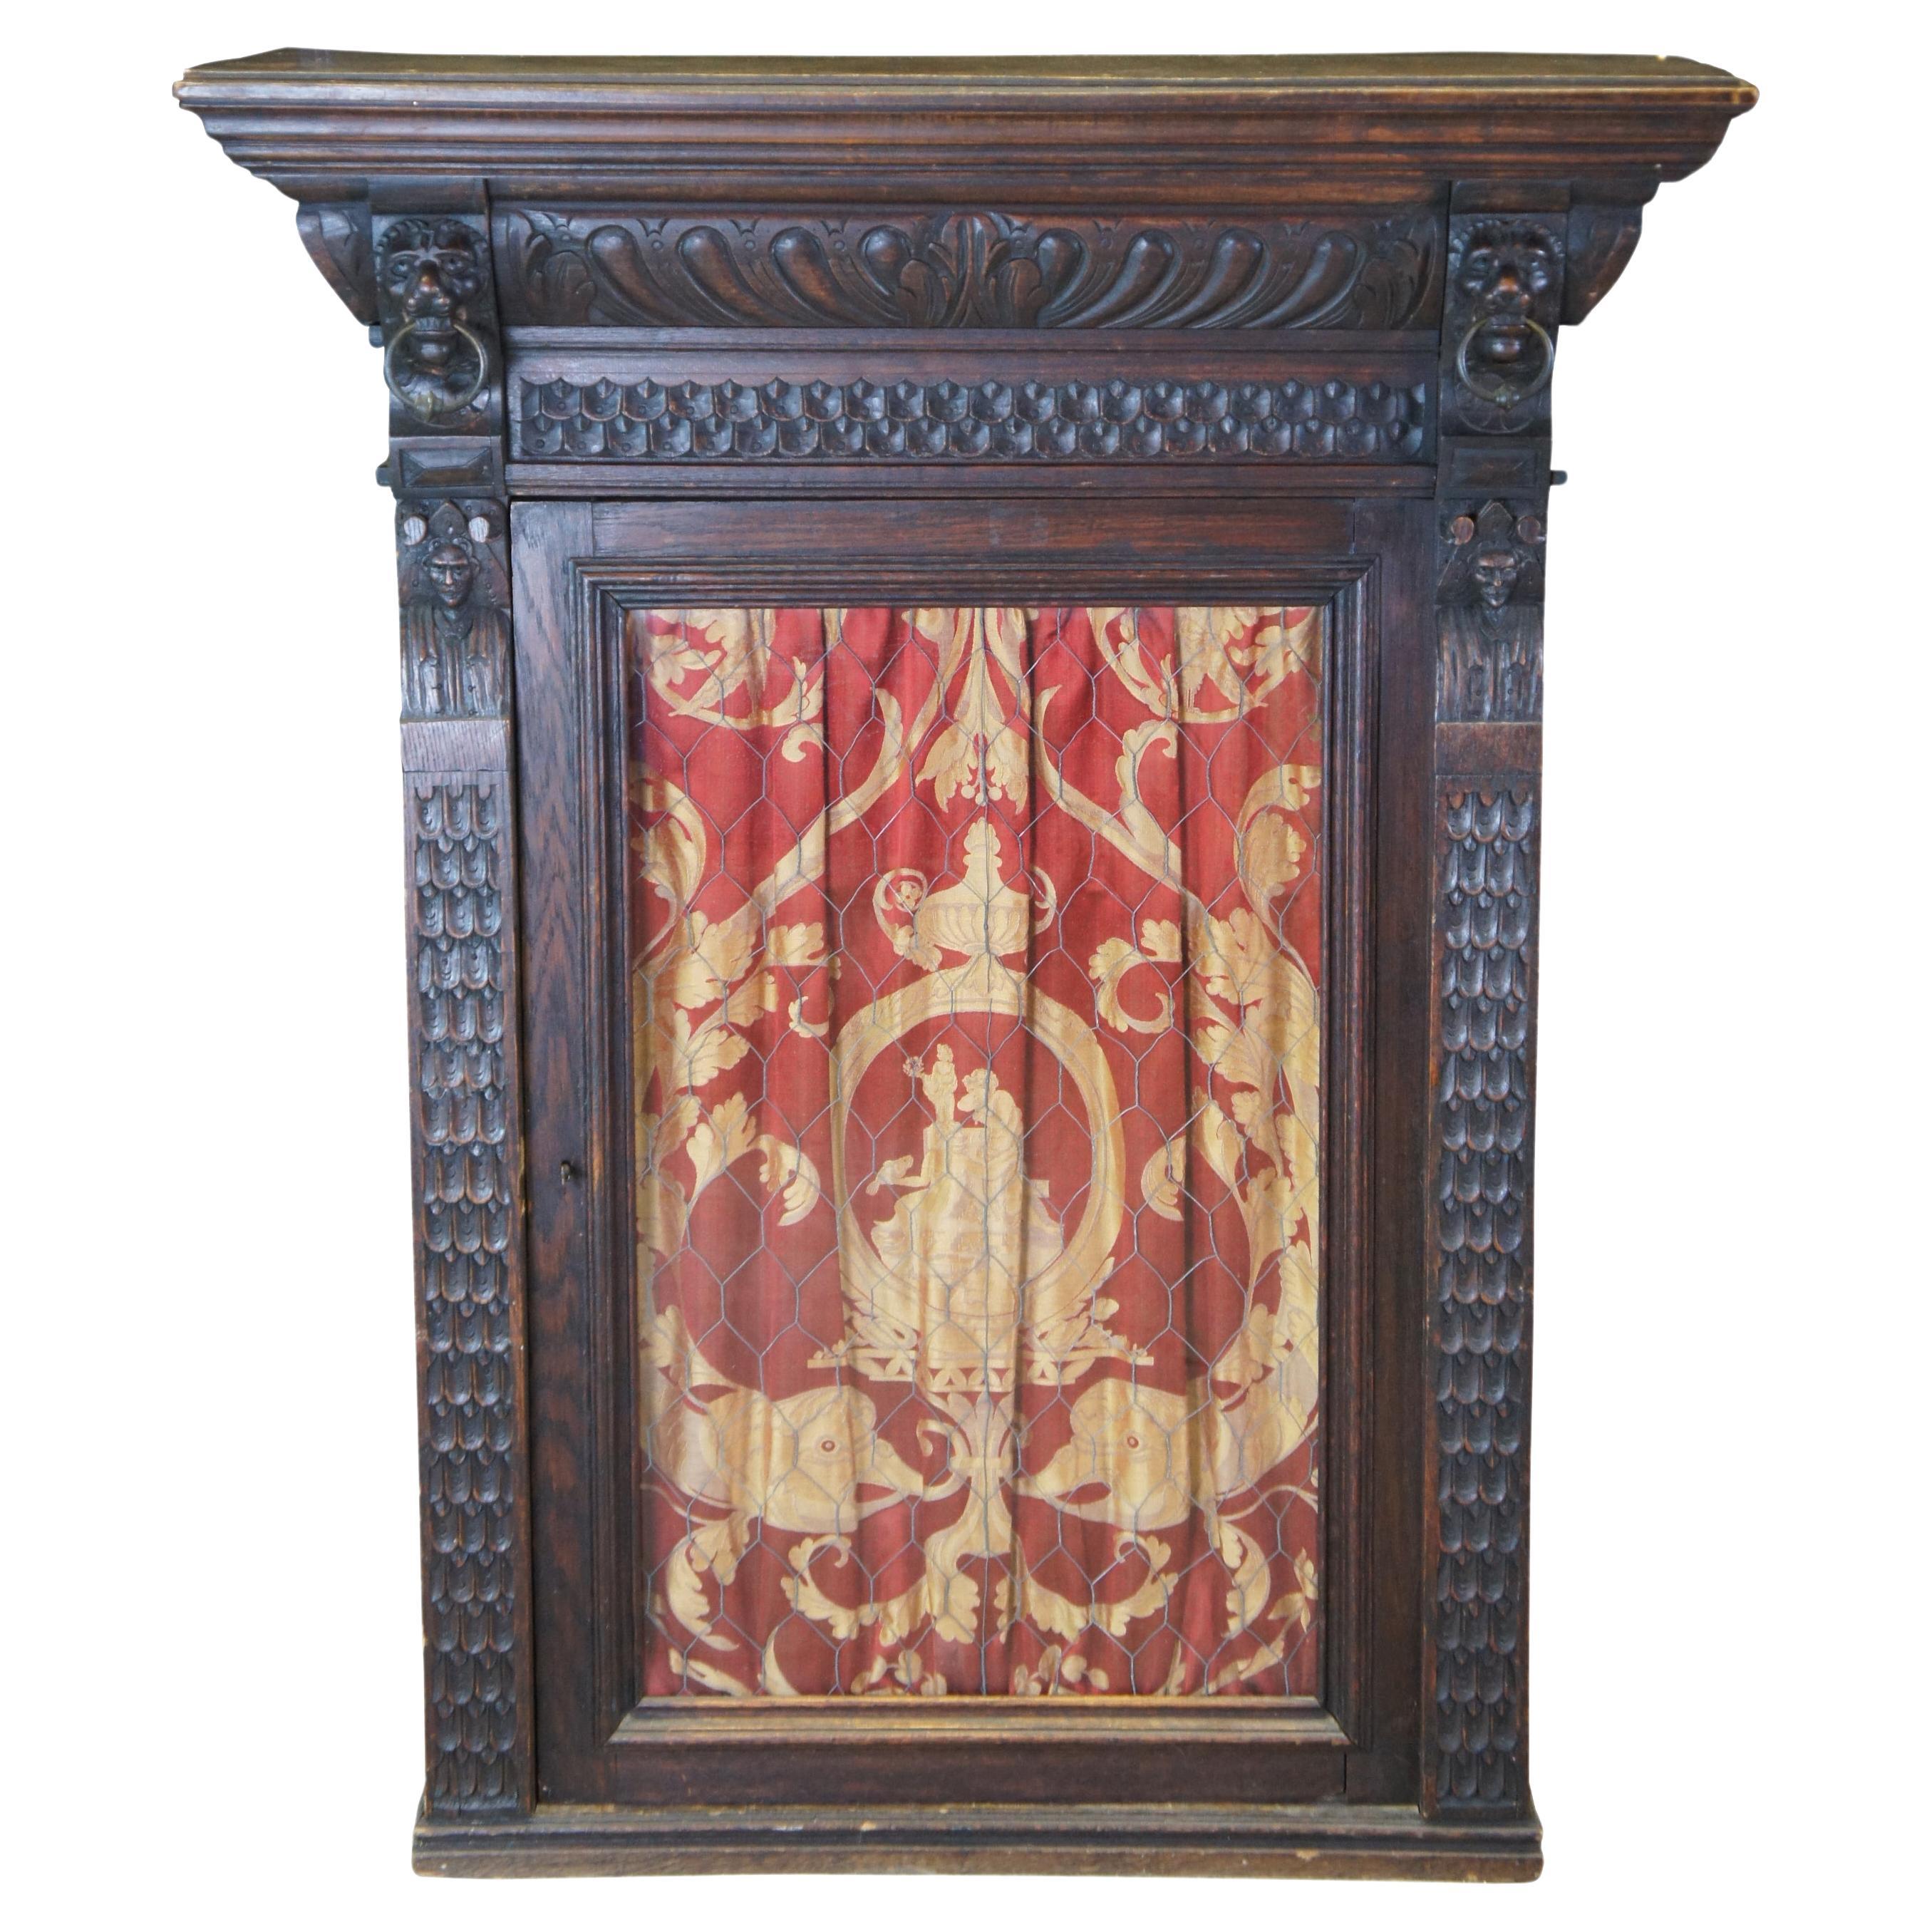 Antike 19. Jh. French Renaissance Revival Eiche Hängebücherregal Curio Cupboard